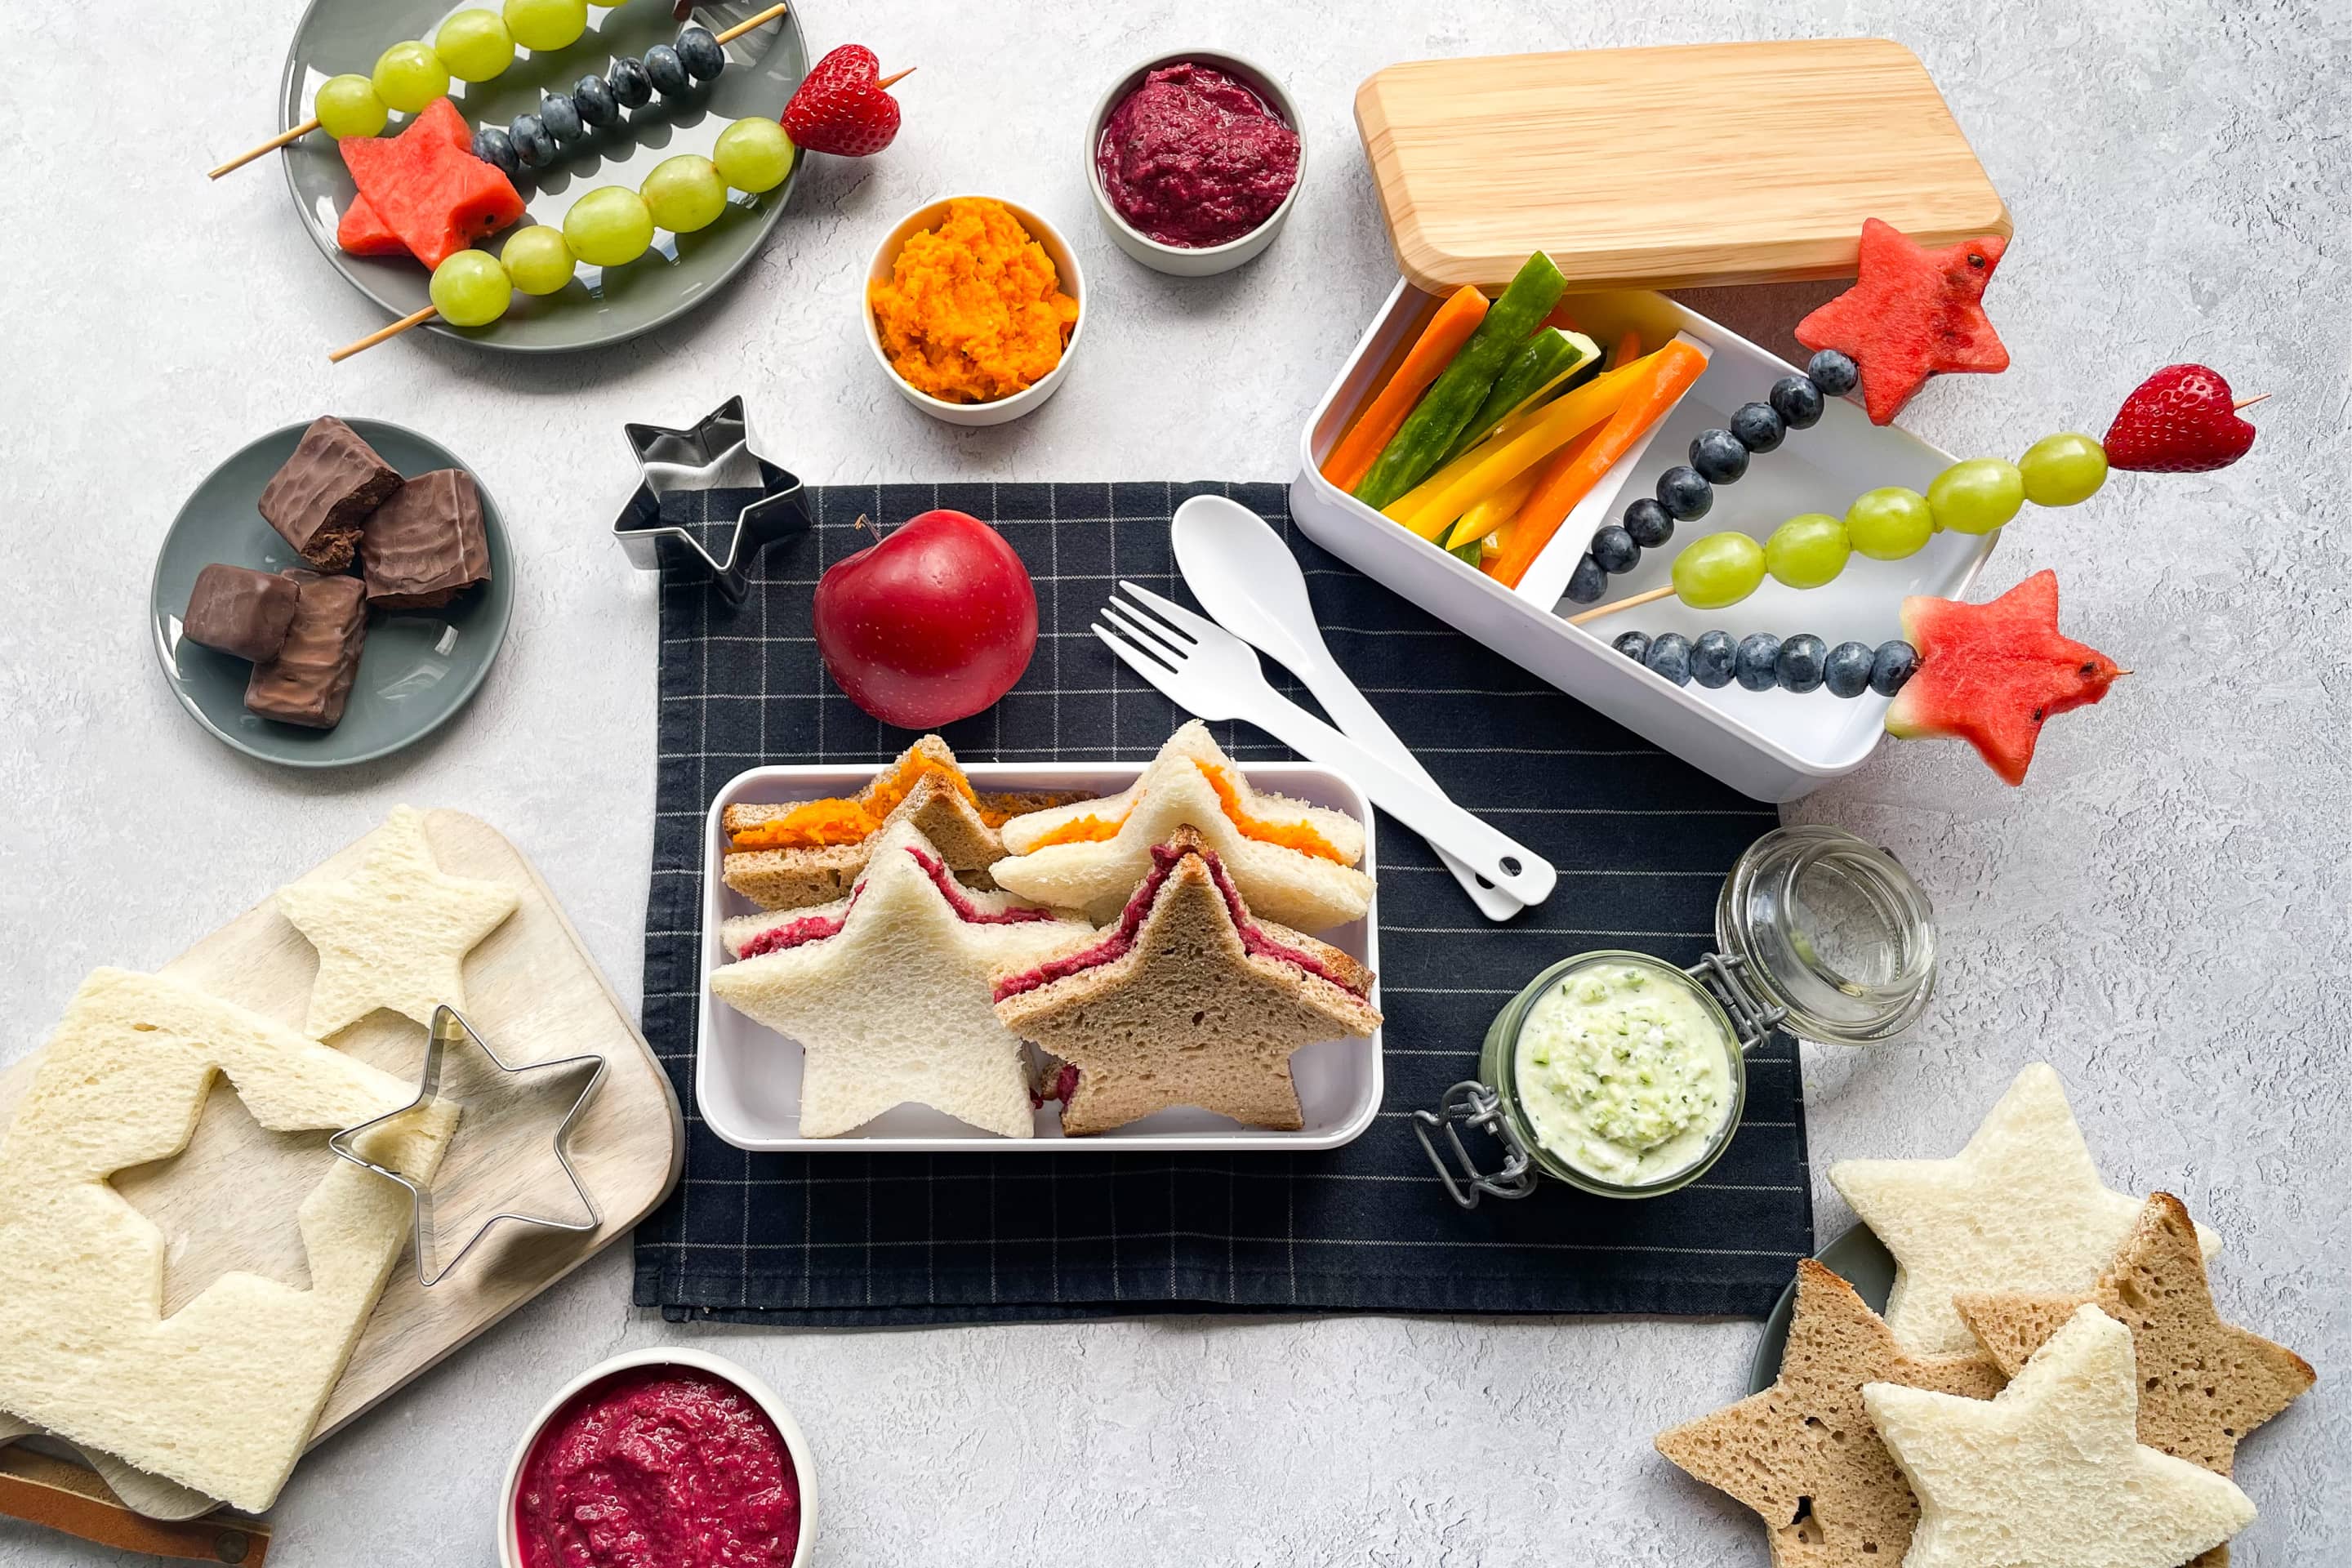 Сандвичи във формата на звездички в кутия за храна, намазани с цветни зеленчукови разядки и шишчета от плодове.